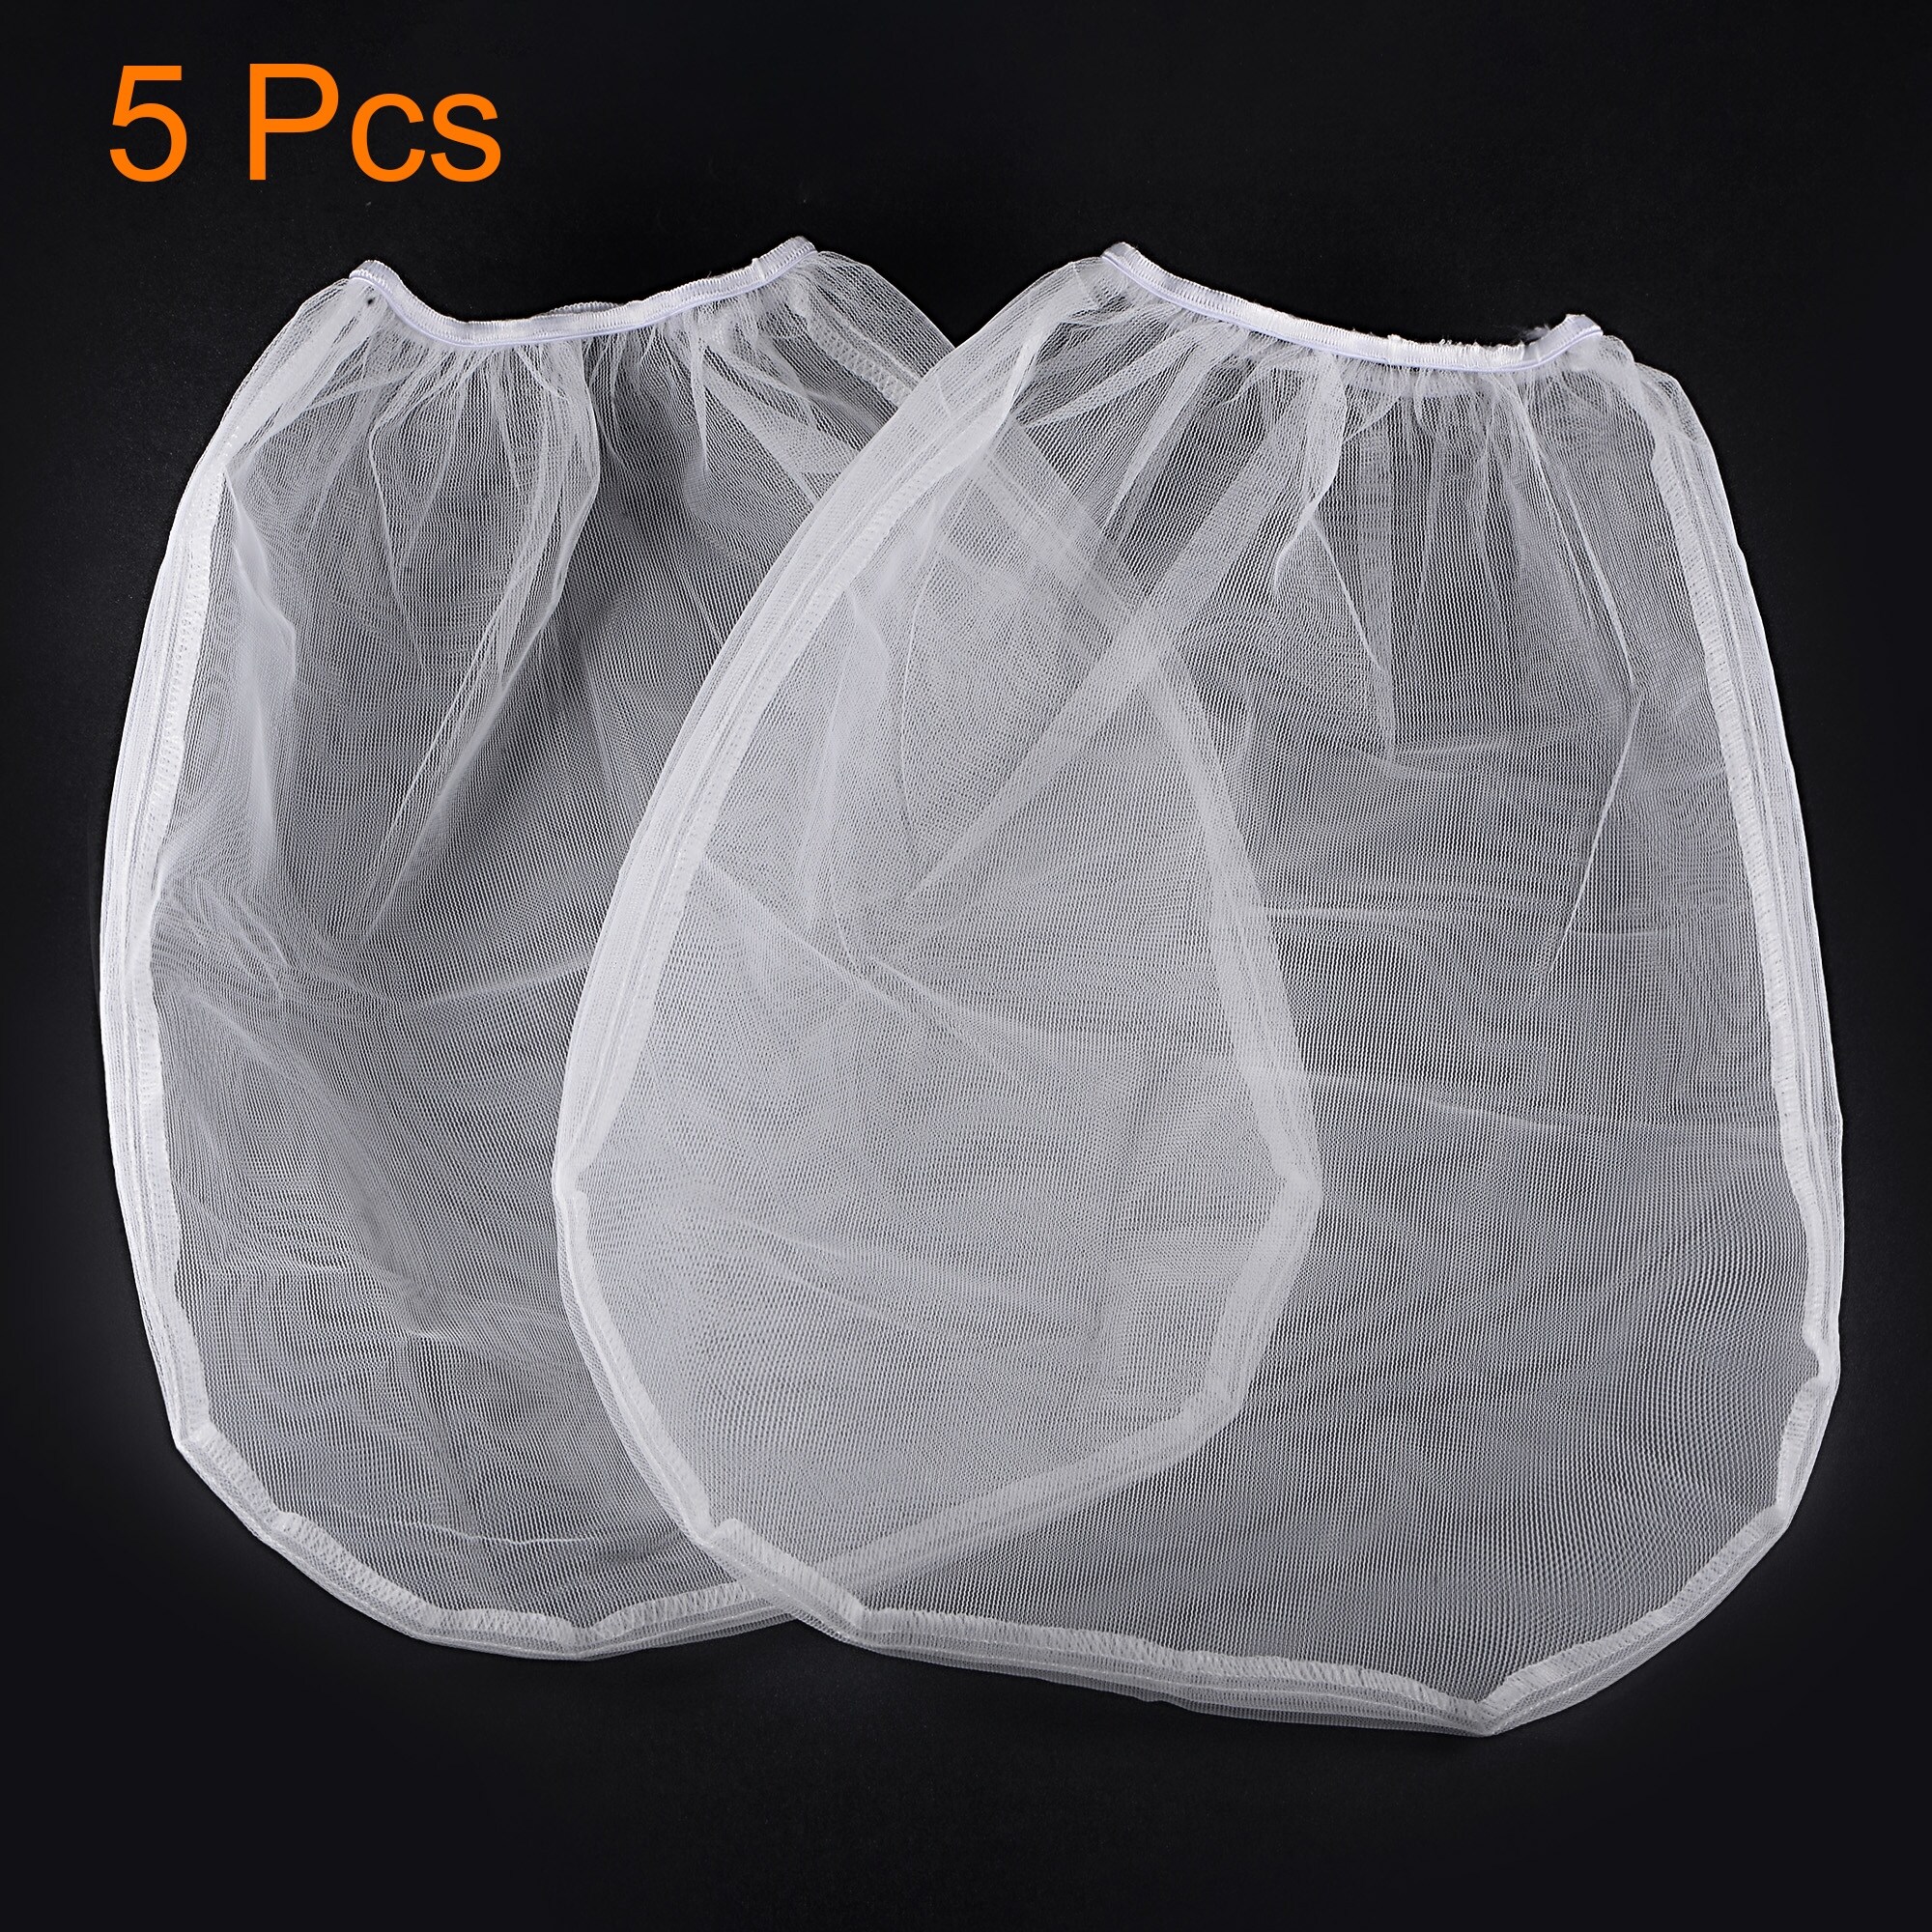 SuperTuff Elastic Top Bag Paint Strainer, 1 Gal, Regular Mesh